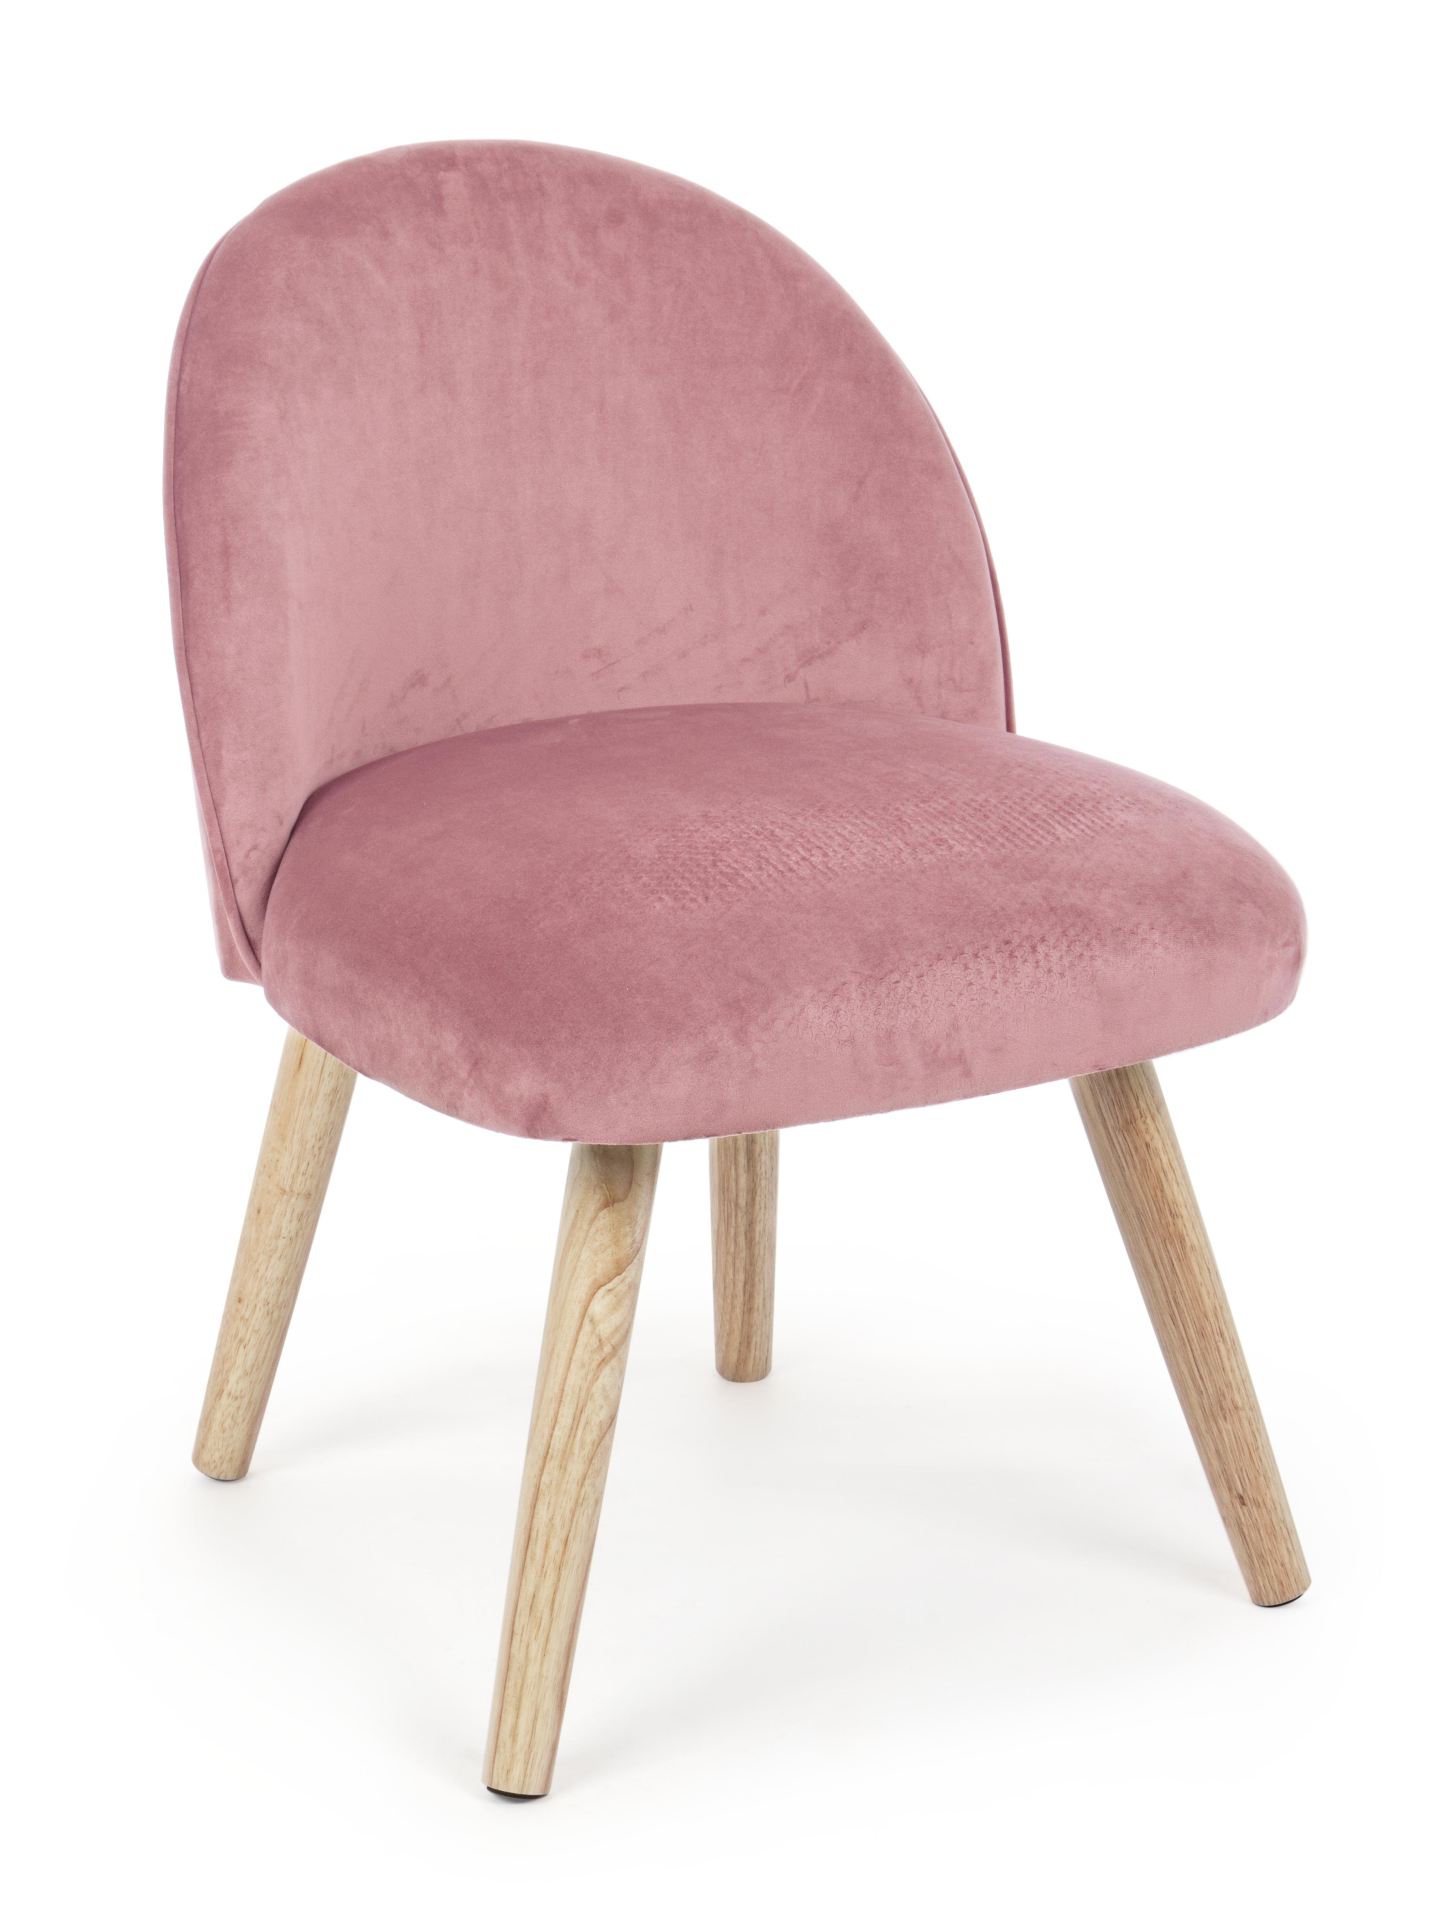 Der Stuhl Adeline überzeugt mit seinem klassischen Design. Gefertigt wurde er aus Stoff in Samt-Optik, welcher einen rosa Farbton besitzt. Das Gestell ist aus Buchenholz und hat eine natürliche Farbe. Der Stuhl besitzt eine Sitzhöhe von 42 cm. Die Breite 